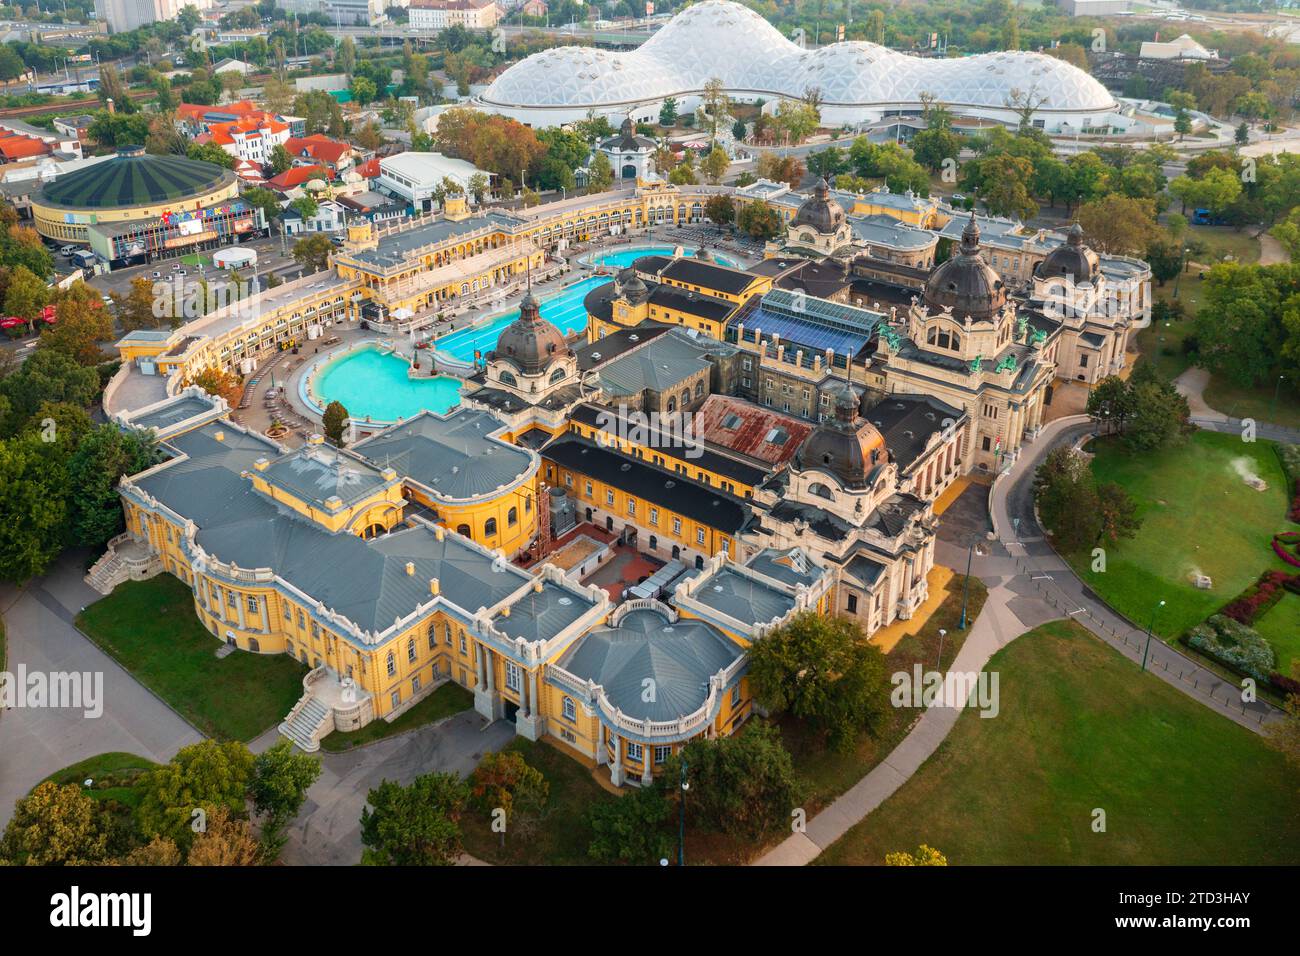 Budapest, Hongrie - vue aérienne sur le bain thermal Szechenyi à côté du parc de la ville. Biodome à l'arrière-plan. Banque D'Images